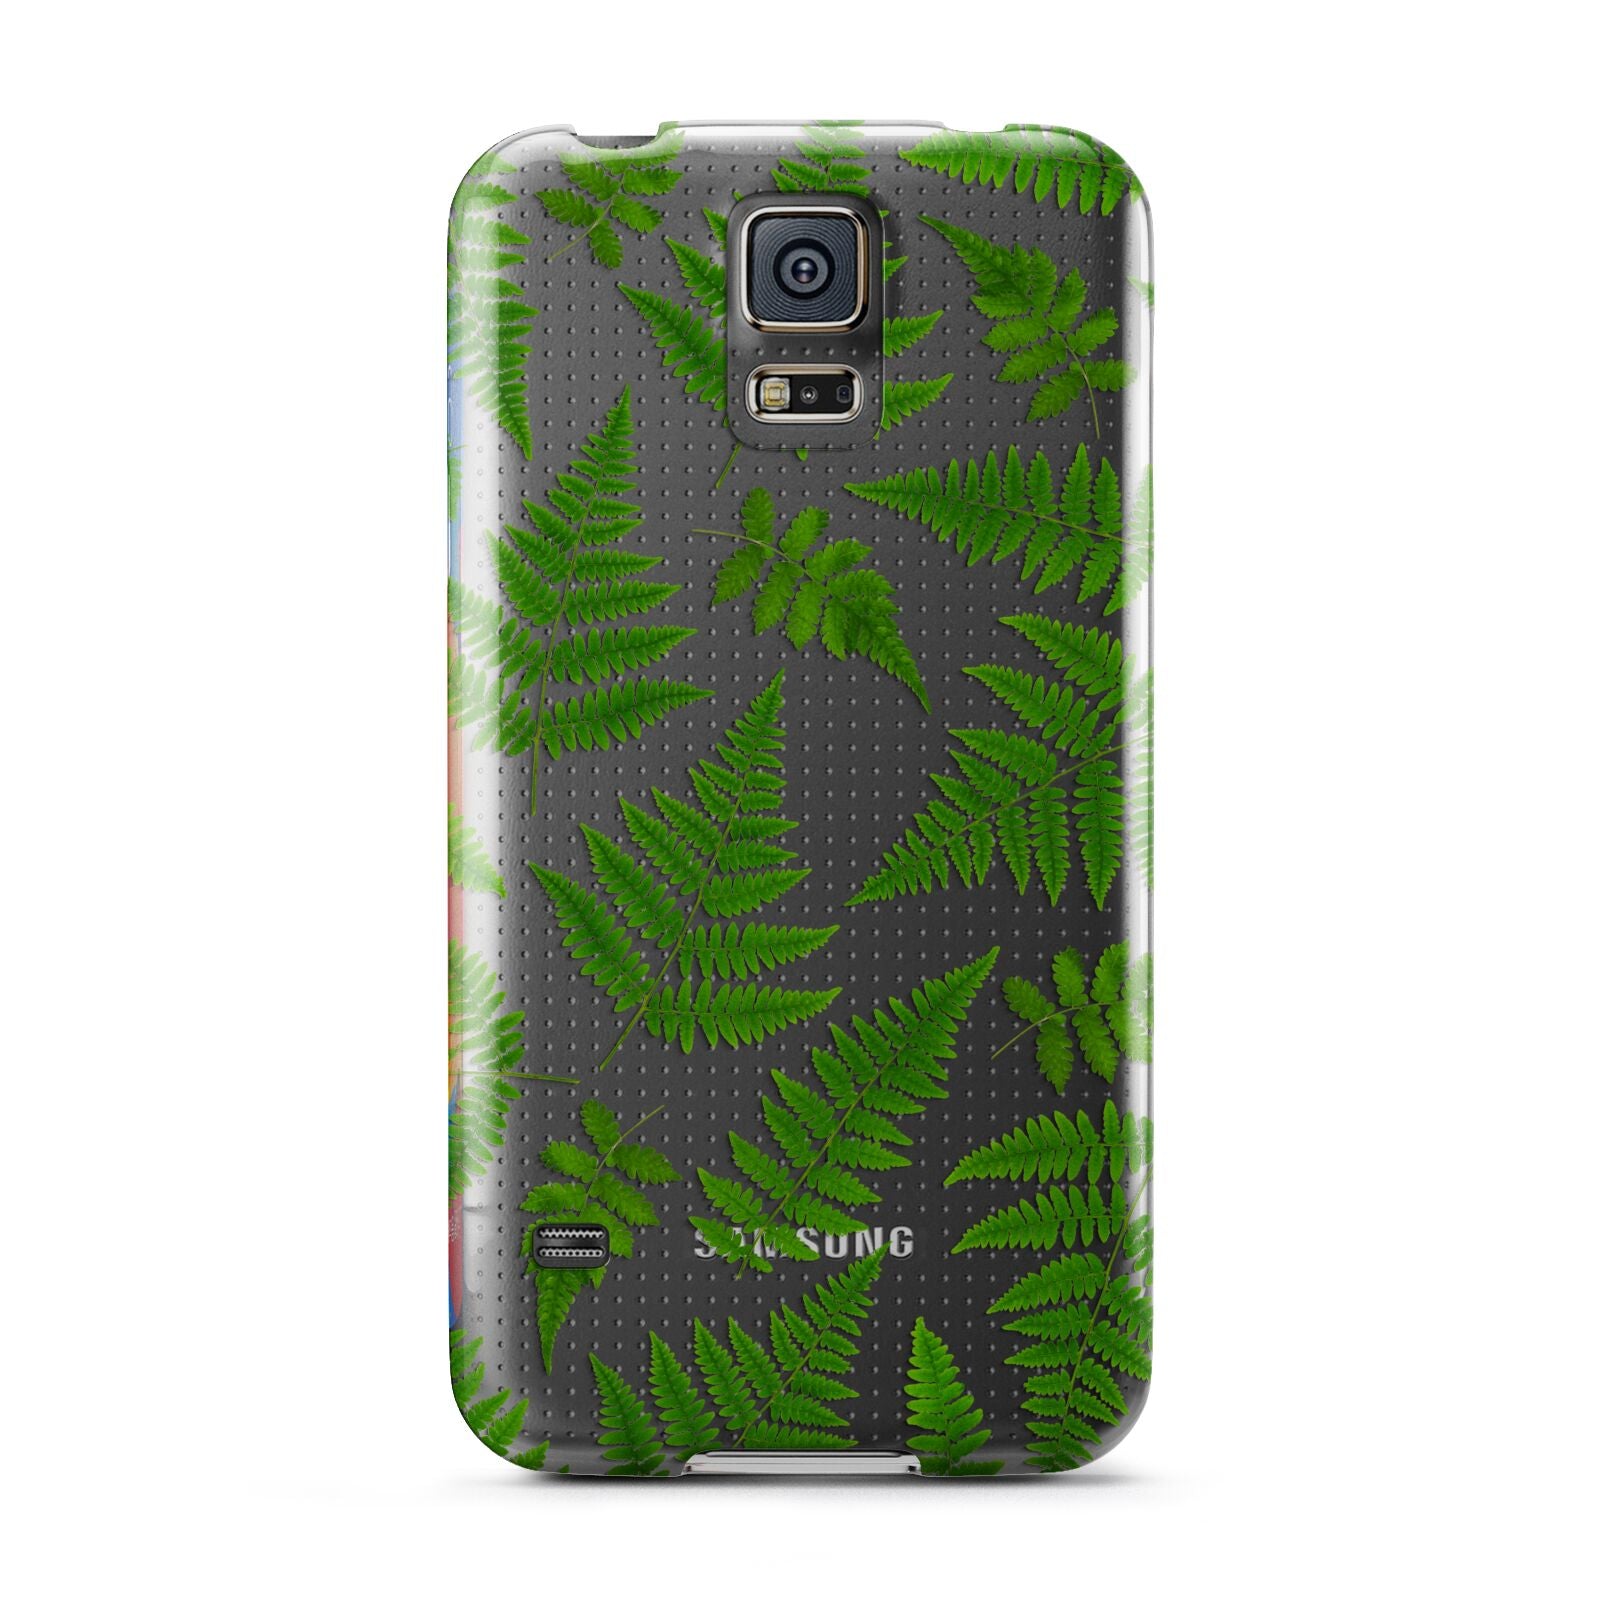 Fern Leaf Samsung Galaxy S5 Case